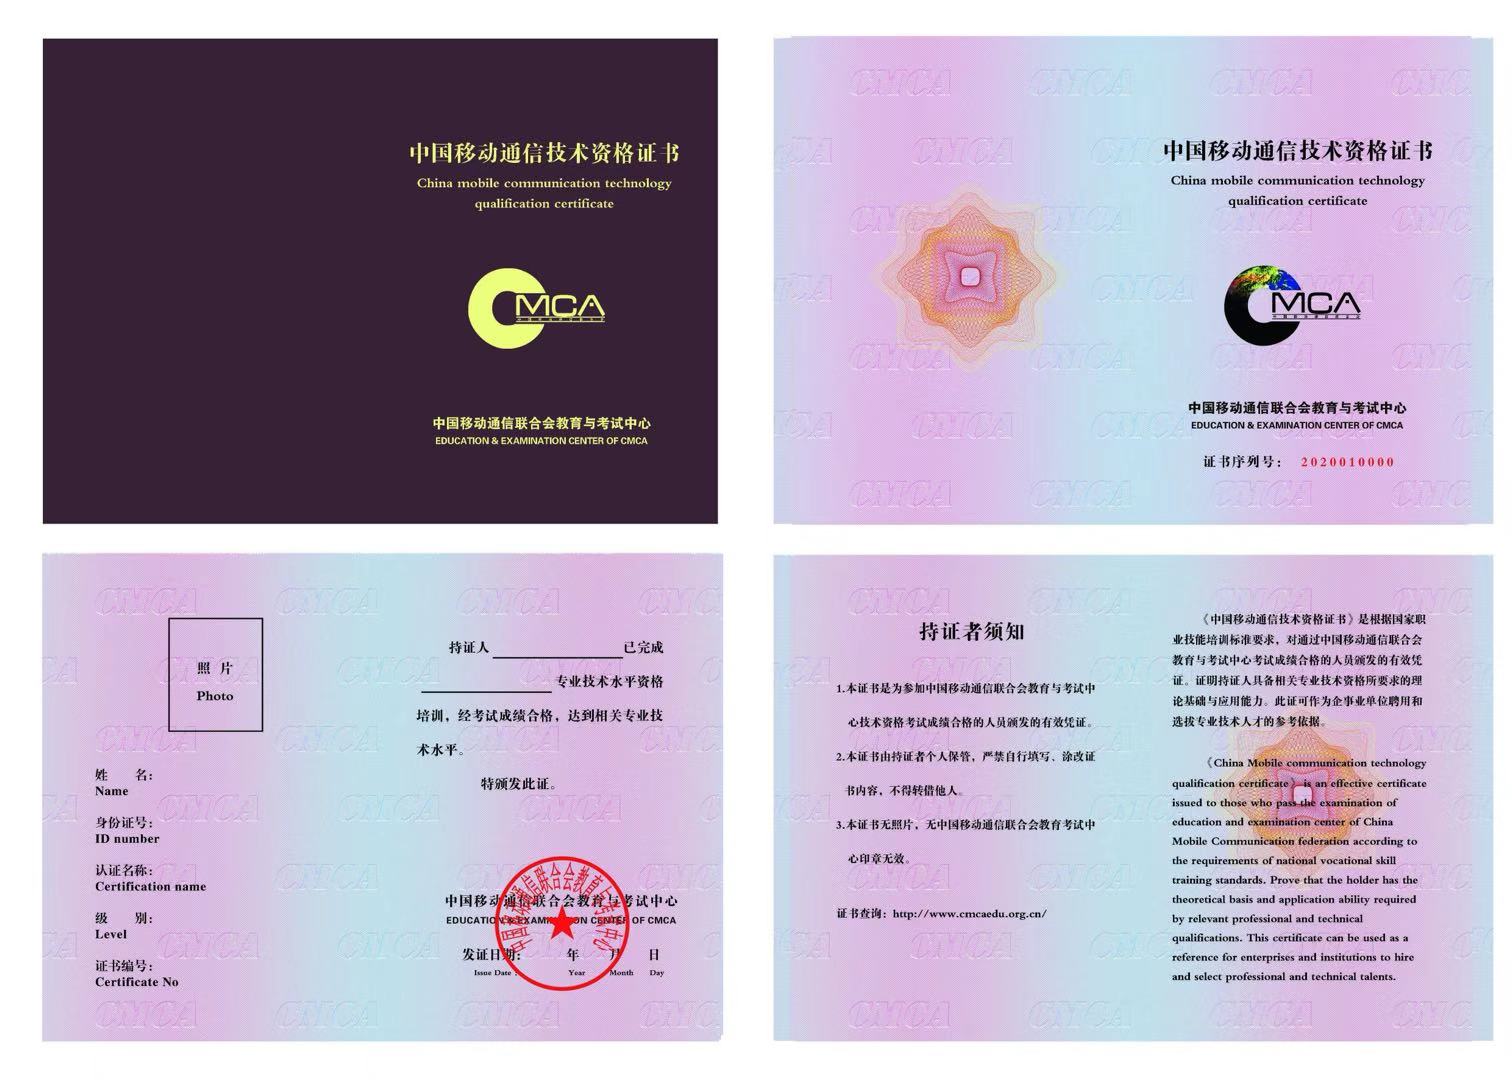 中国移动通信联合会教育与考试中心 5G基站建设技术 中国移动通信技术资格证书